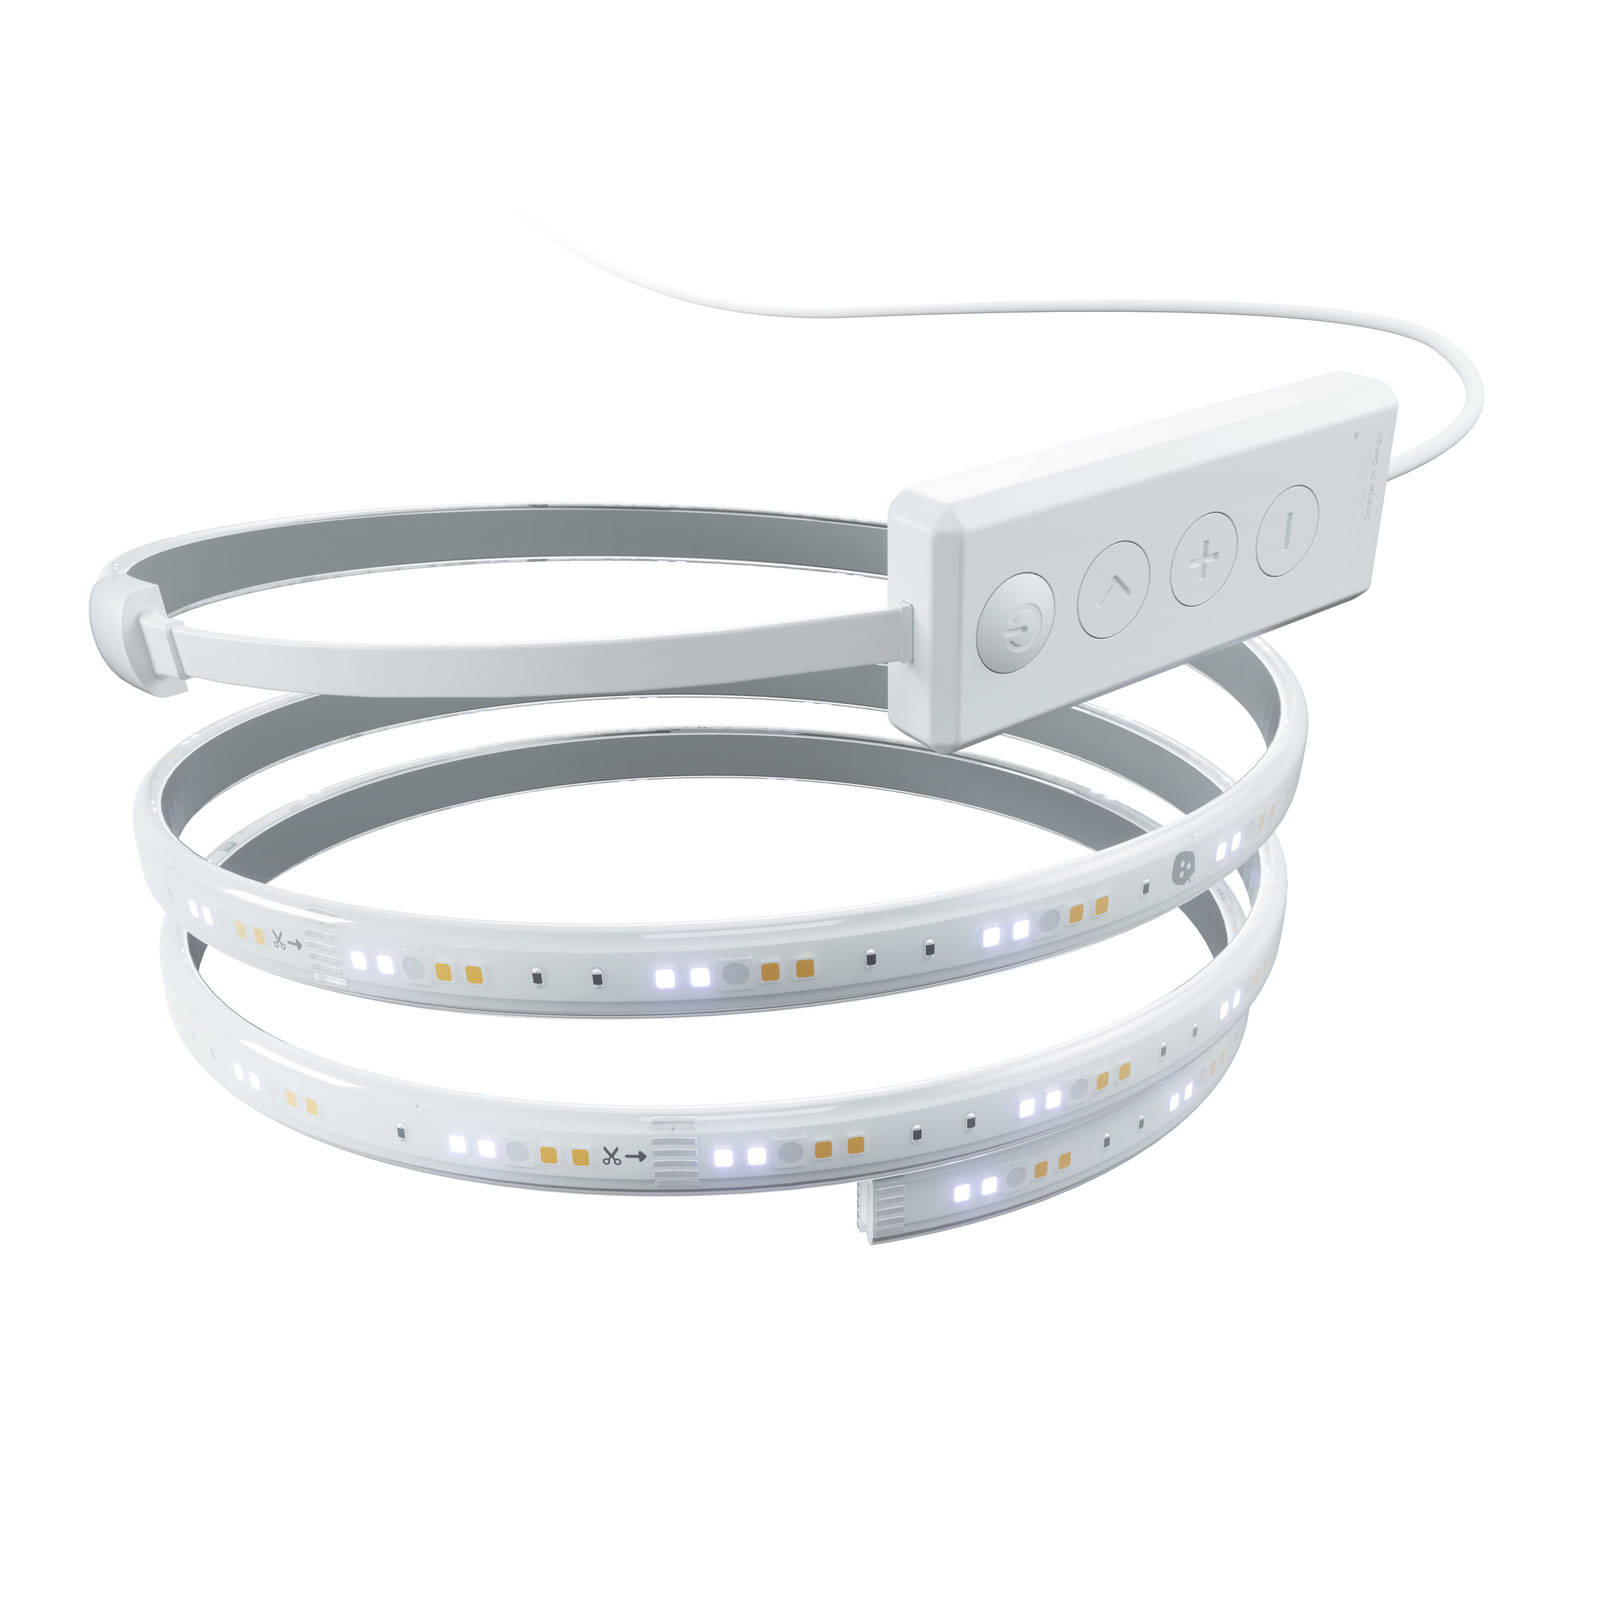 Nanoleaf Essentials LED Light Strip Starter Kit 2m